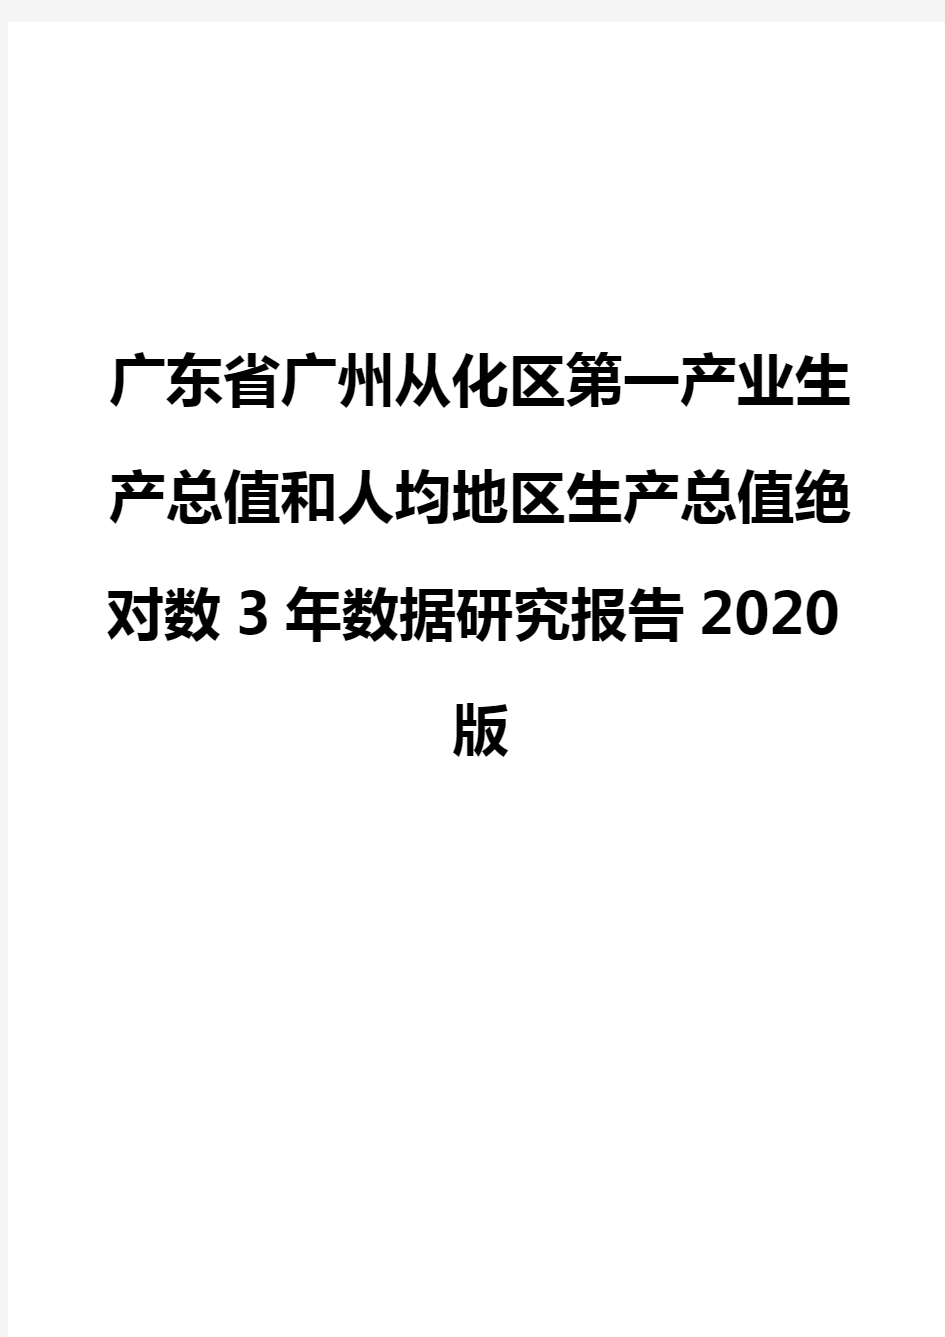 广东省广州从化区第一产业生产总值和人均地区生产总值绝对数3年数据研究报告2020版